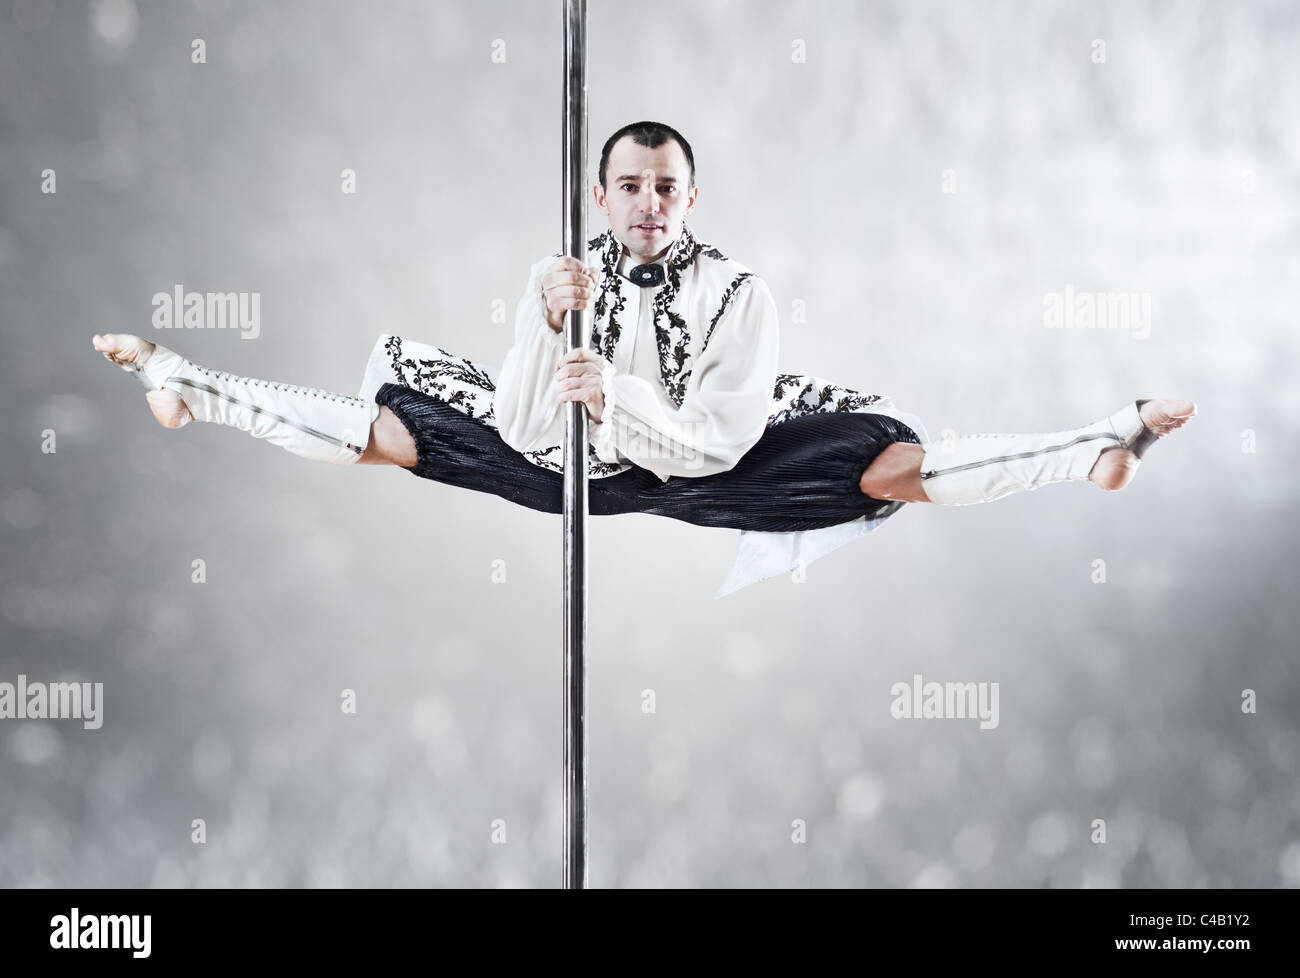 Junge Pole-Dance-Mann. Weiße Farben. Stockfoto